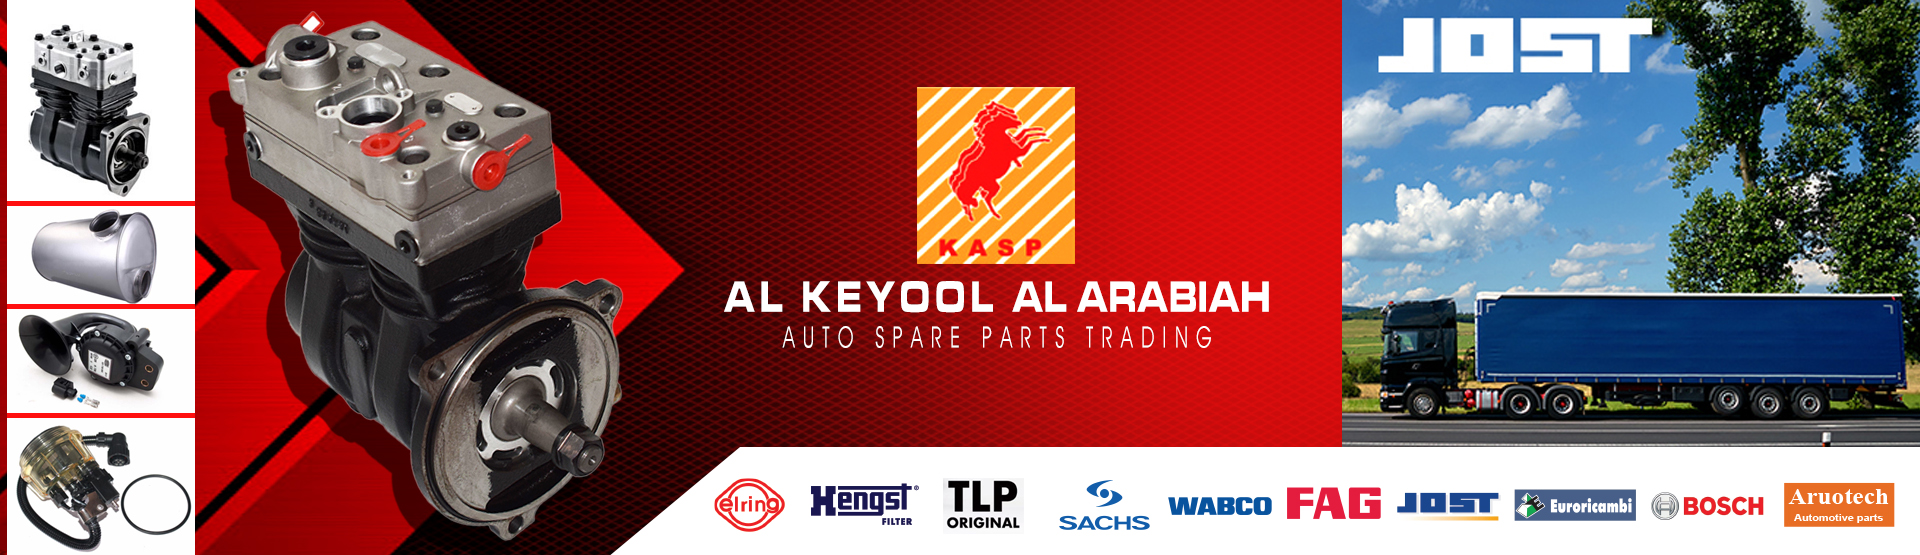 AL KEYOOL AL ARABIAH AUTO SPARE PARTS TRADING